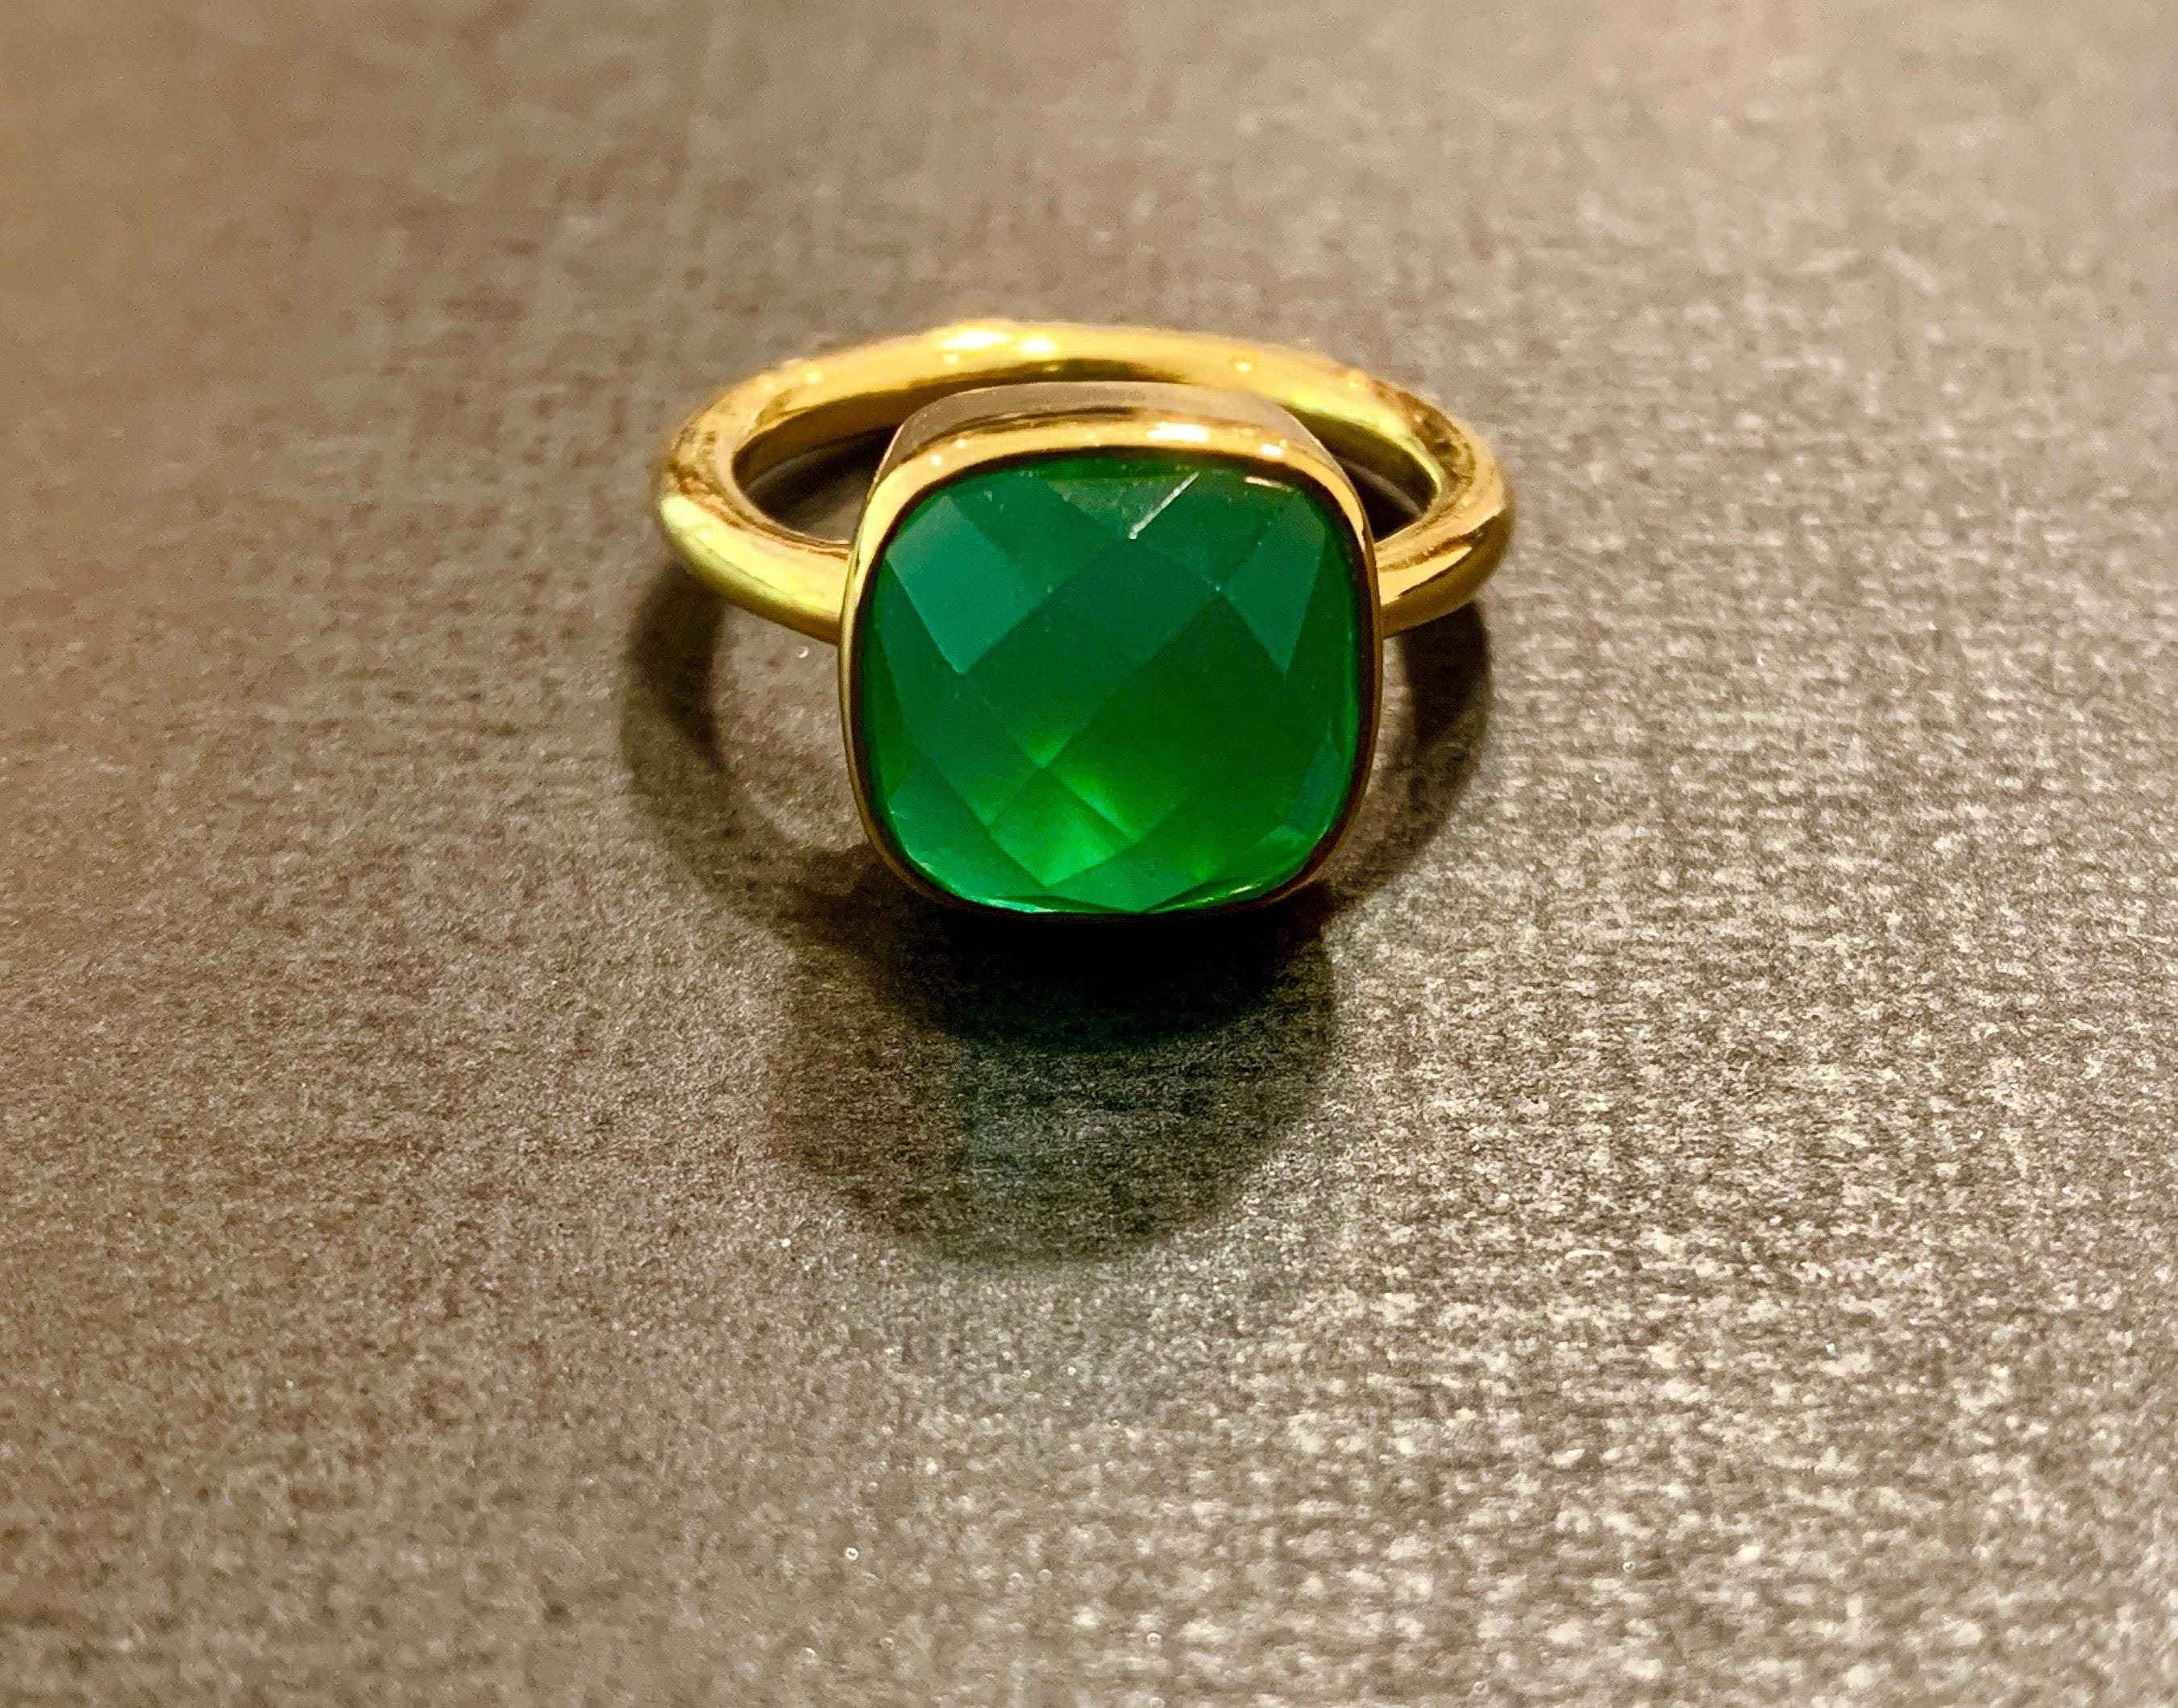  jade ring